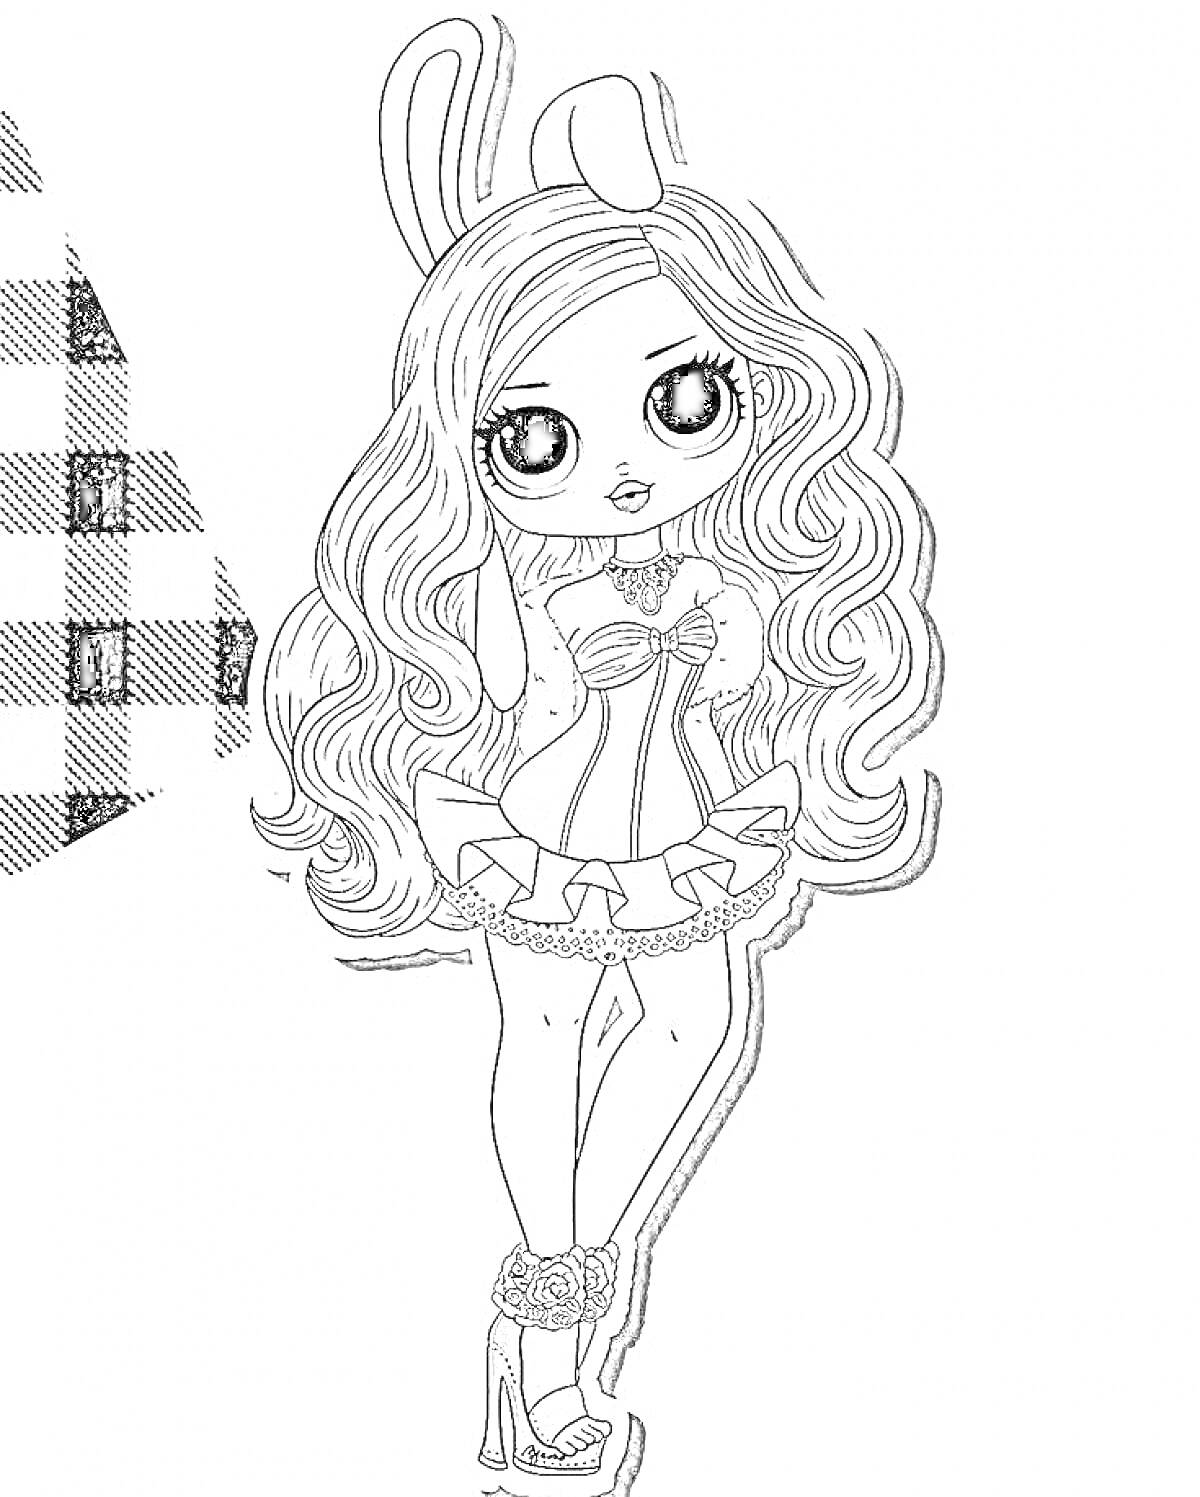 Раскраска Девочка кукла ЛОЛ ОМГ с длинными распущенными волосами, ободком с ушками, в пышном платье и на каблуках